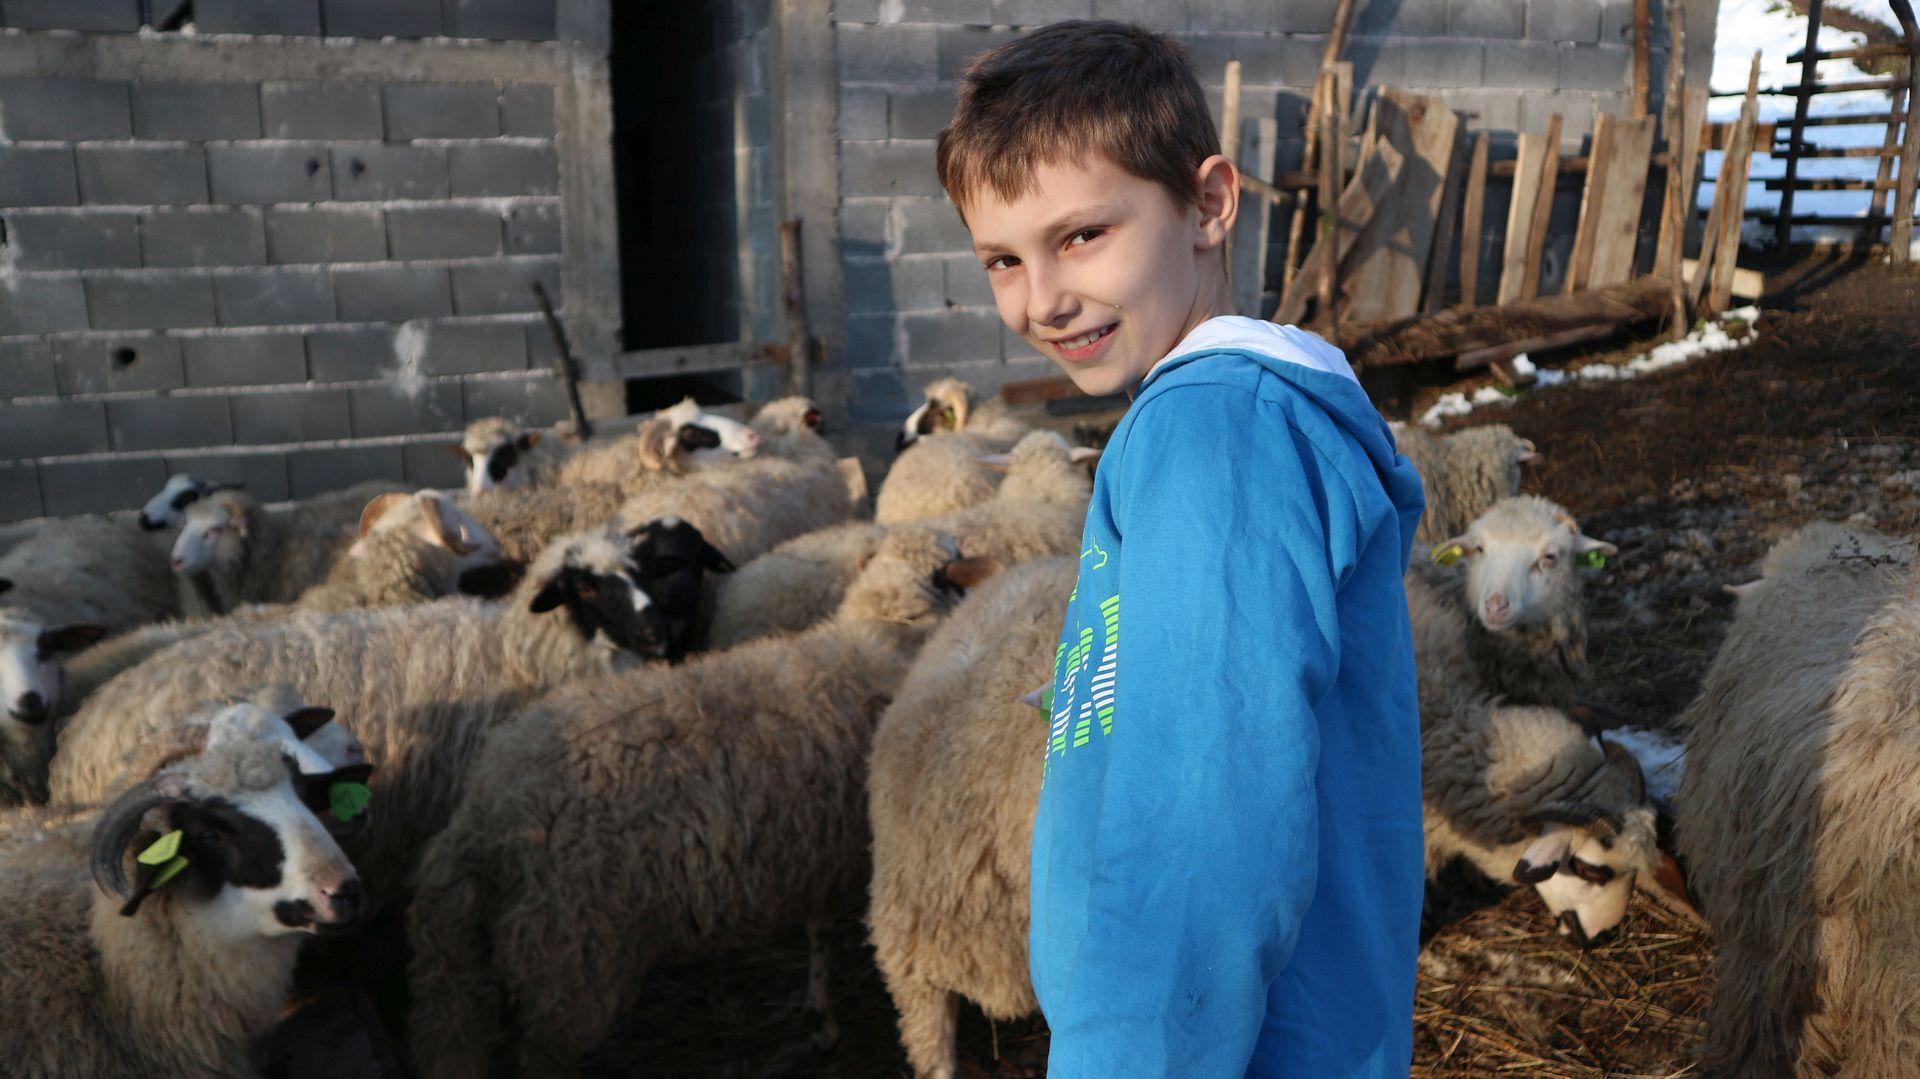 Najmlađi bh. farmer obogatio stado, priču o njemu napravila i zagrebačka Nova TV